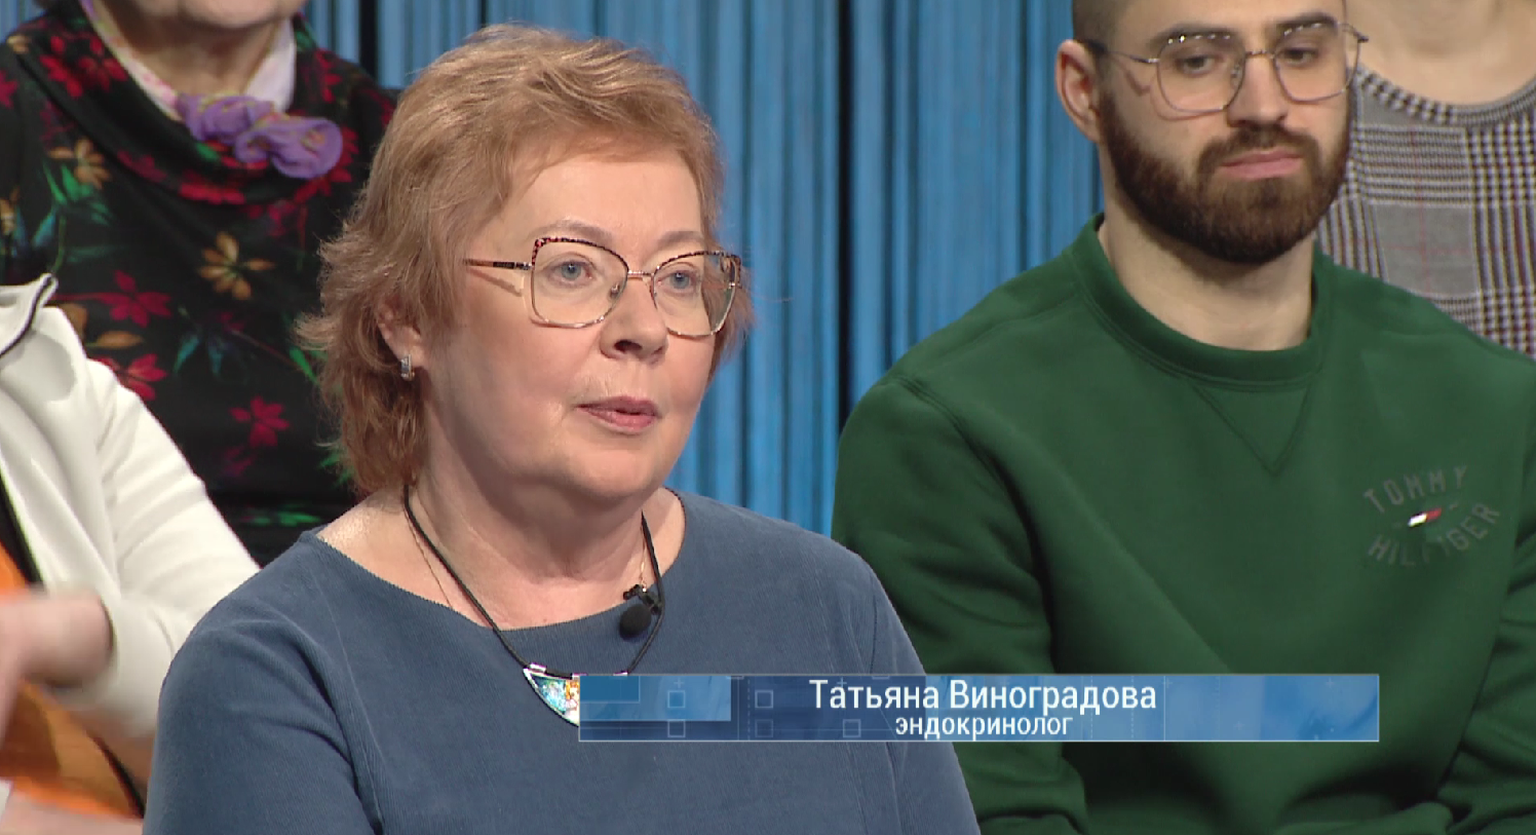 Эндокринолог Татьяна Виноградова.